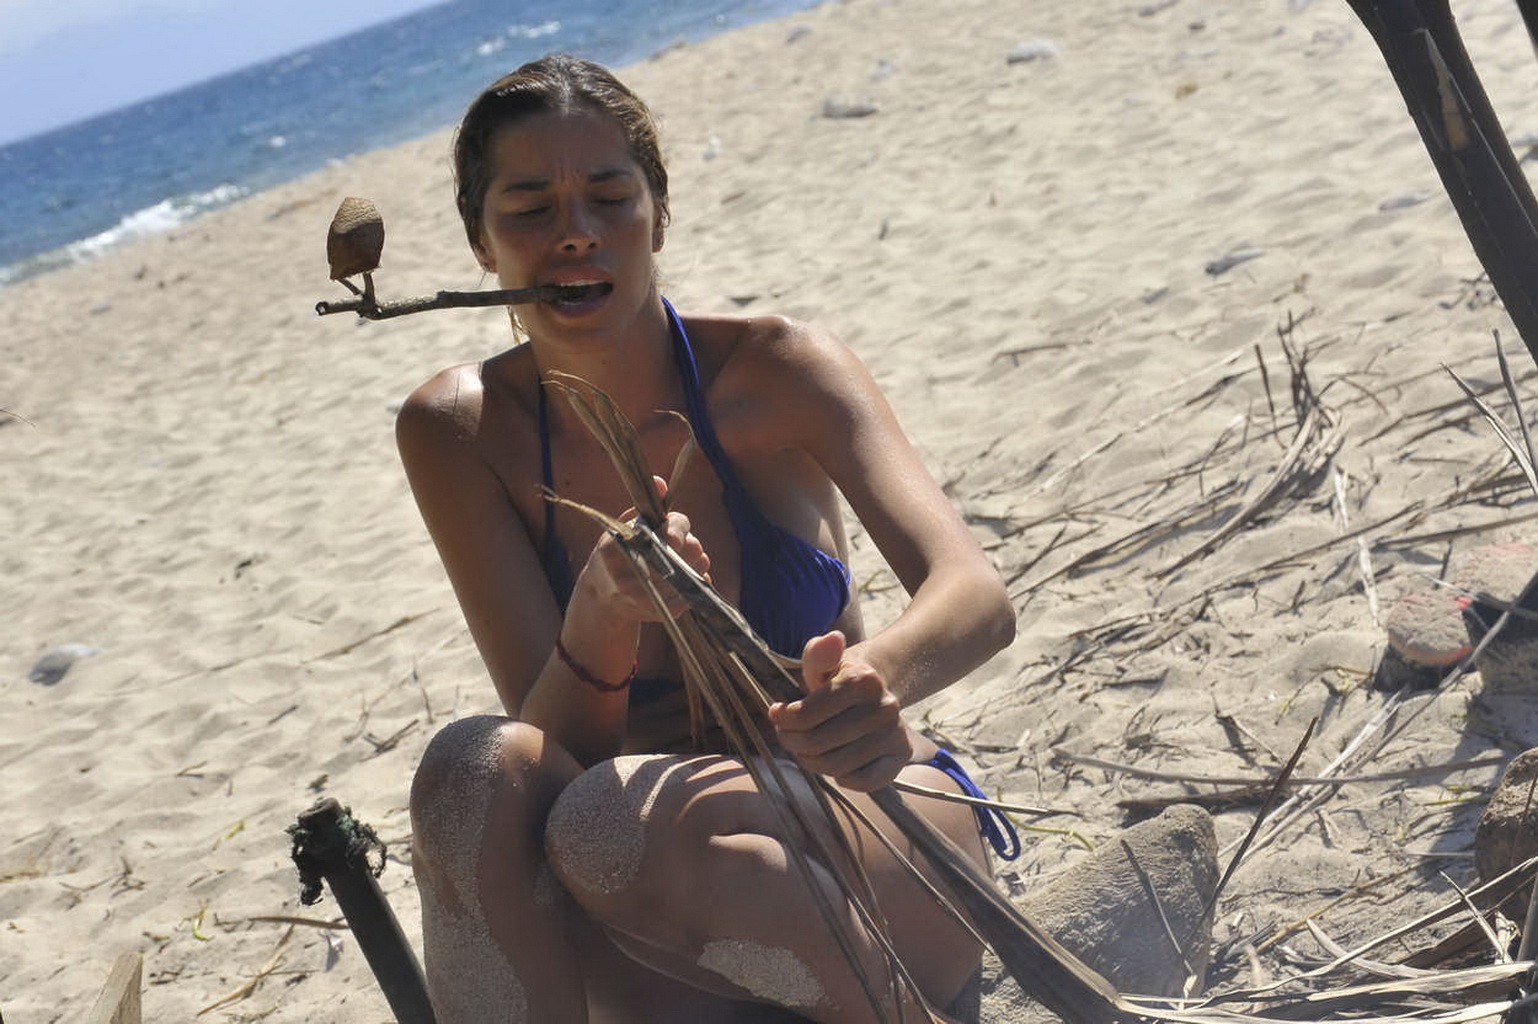 Aida yespica che mostra i suoi meloni e il suo culo rotondo in bikini a perizoma all'isola dei famosi
 #75257233